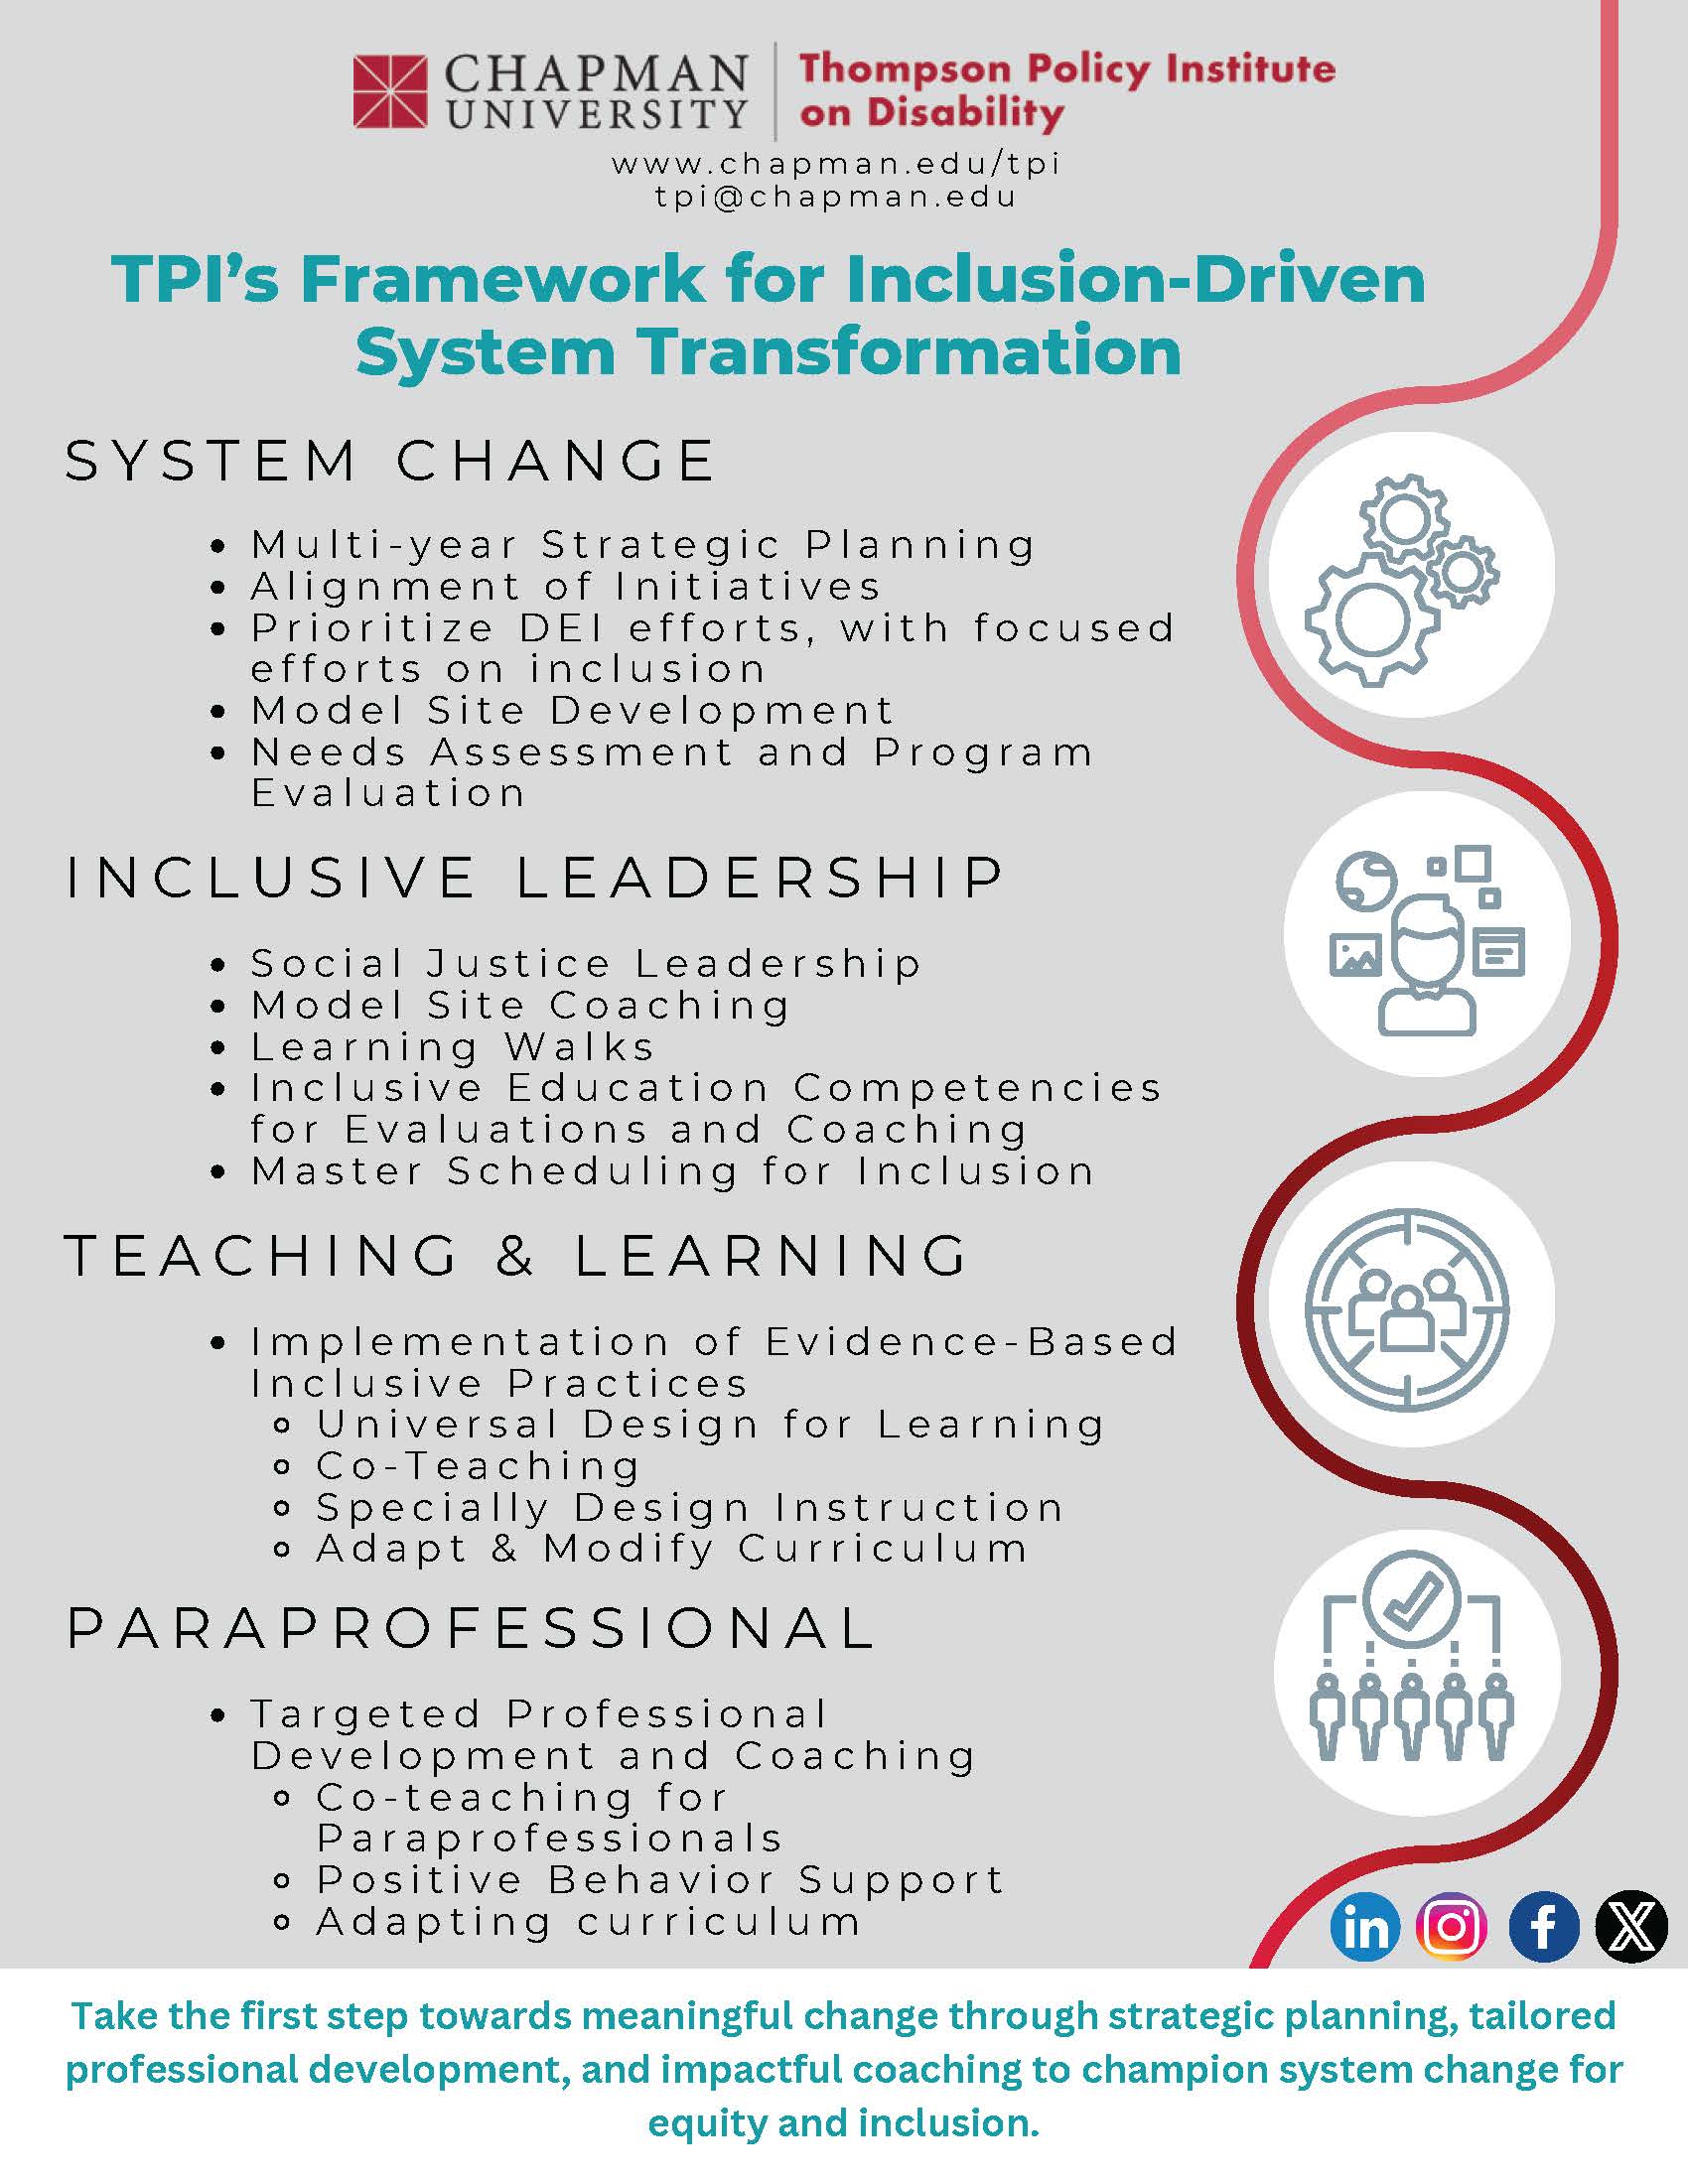 TPI's Farmwork for inclusion driven system transformation  